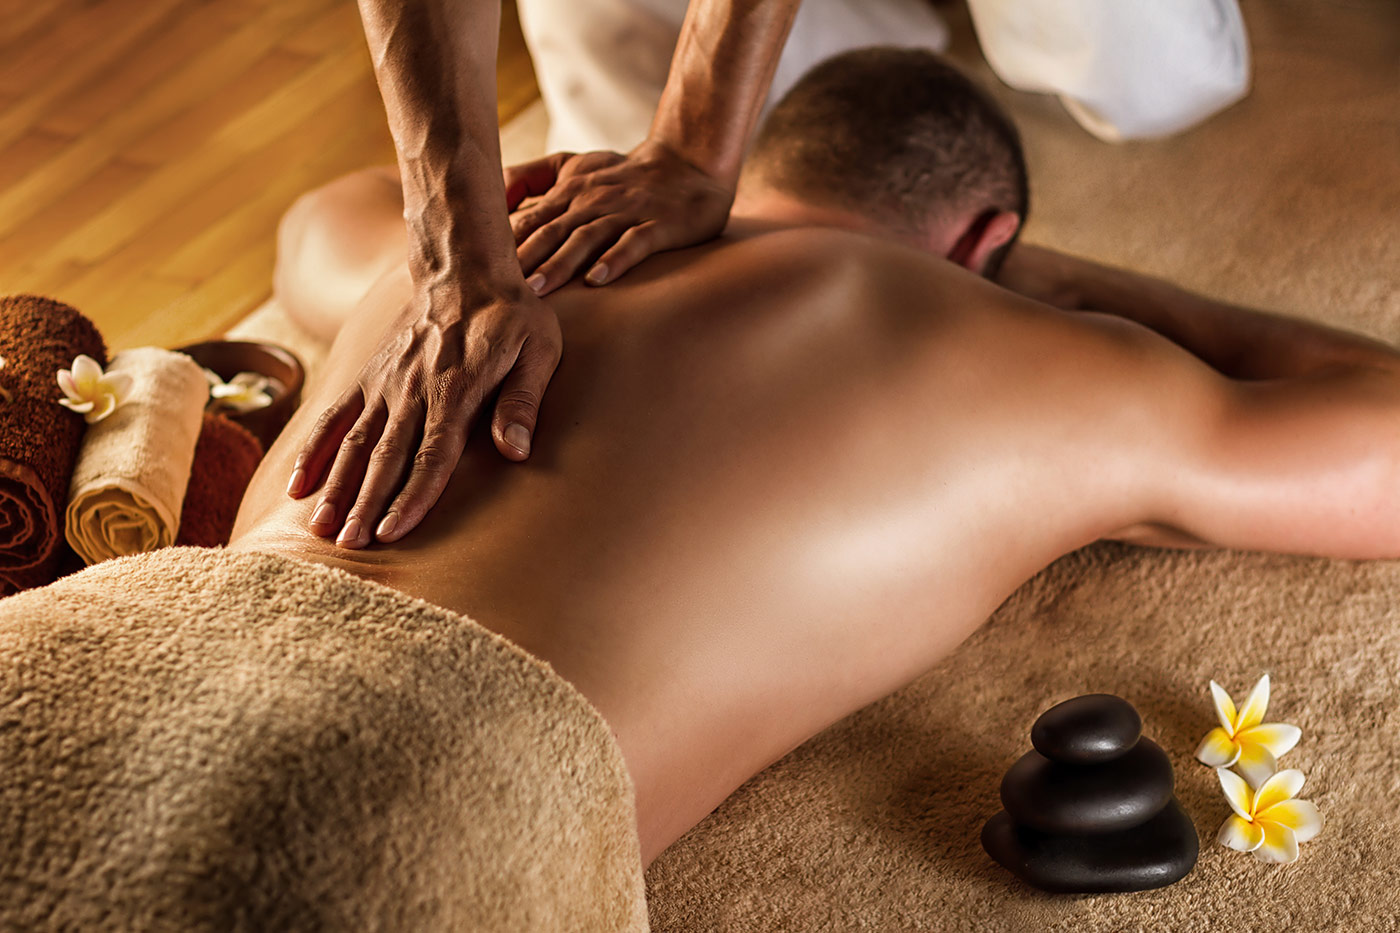 Introbild Wie wirkt die klassische Massage?